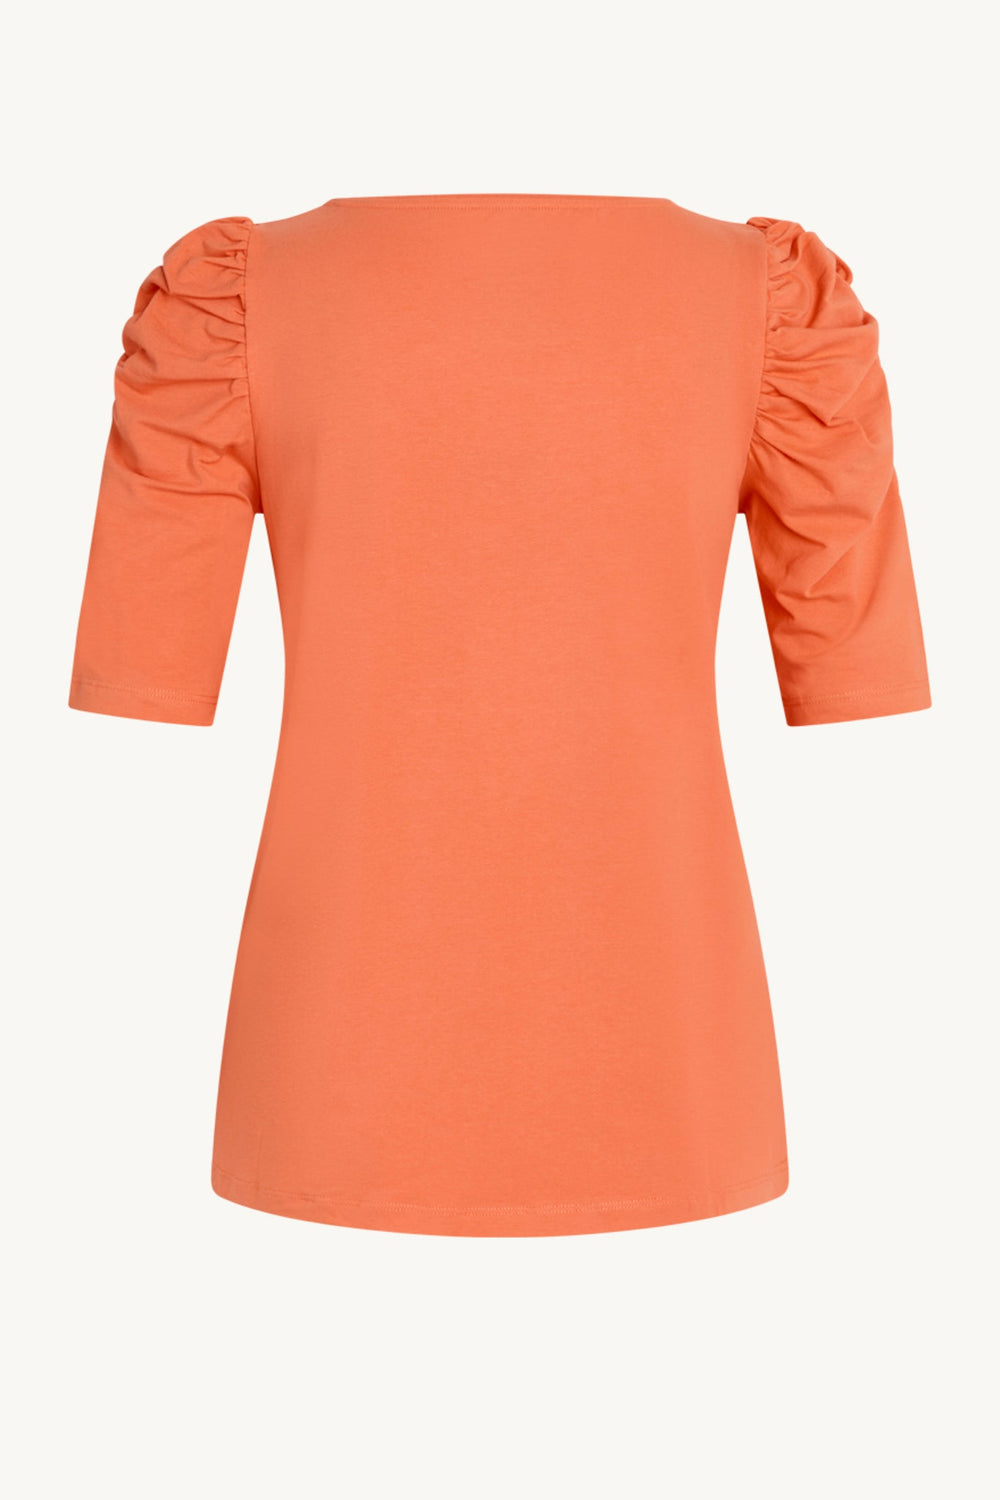 Adrienne-Cw T-Shirt Coral | Skjorter og bluser | Smuk - Dameklær på nett